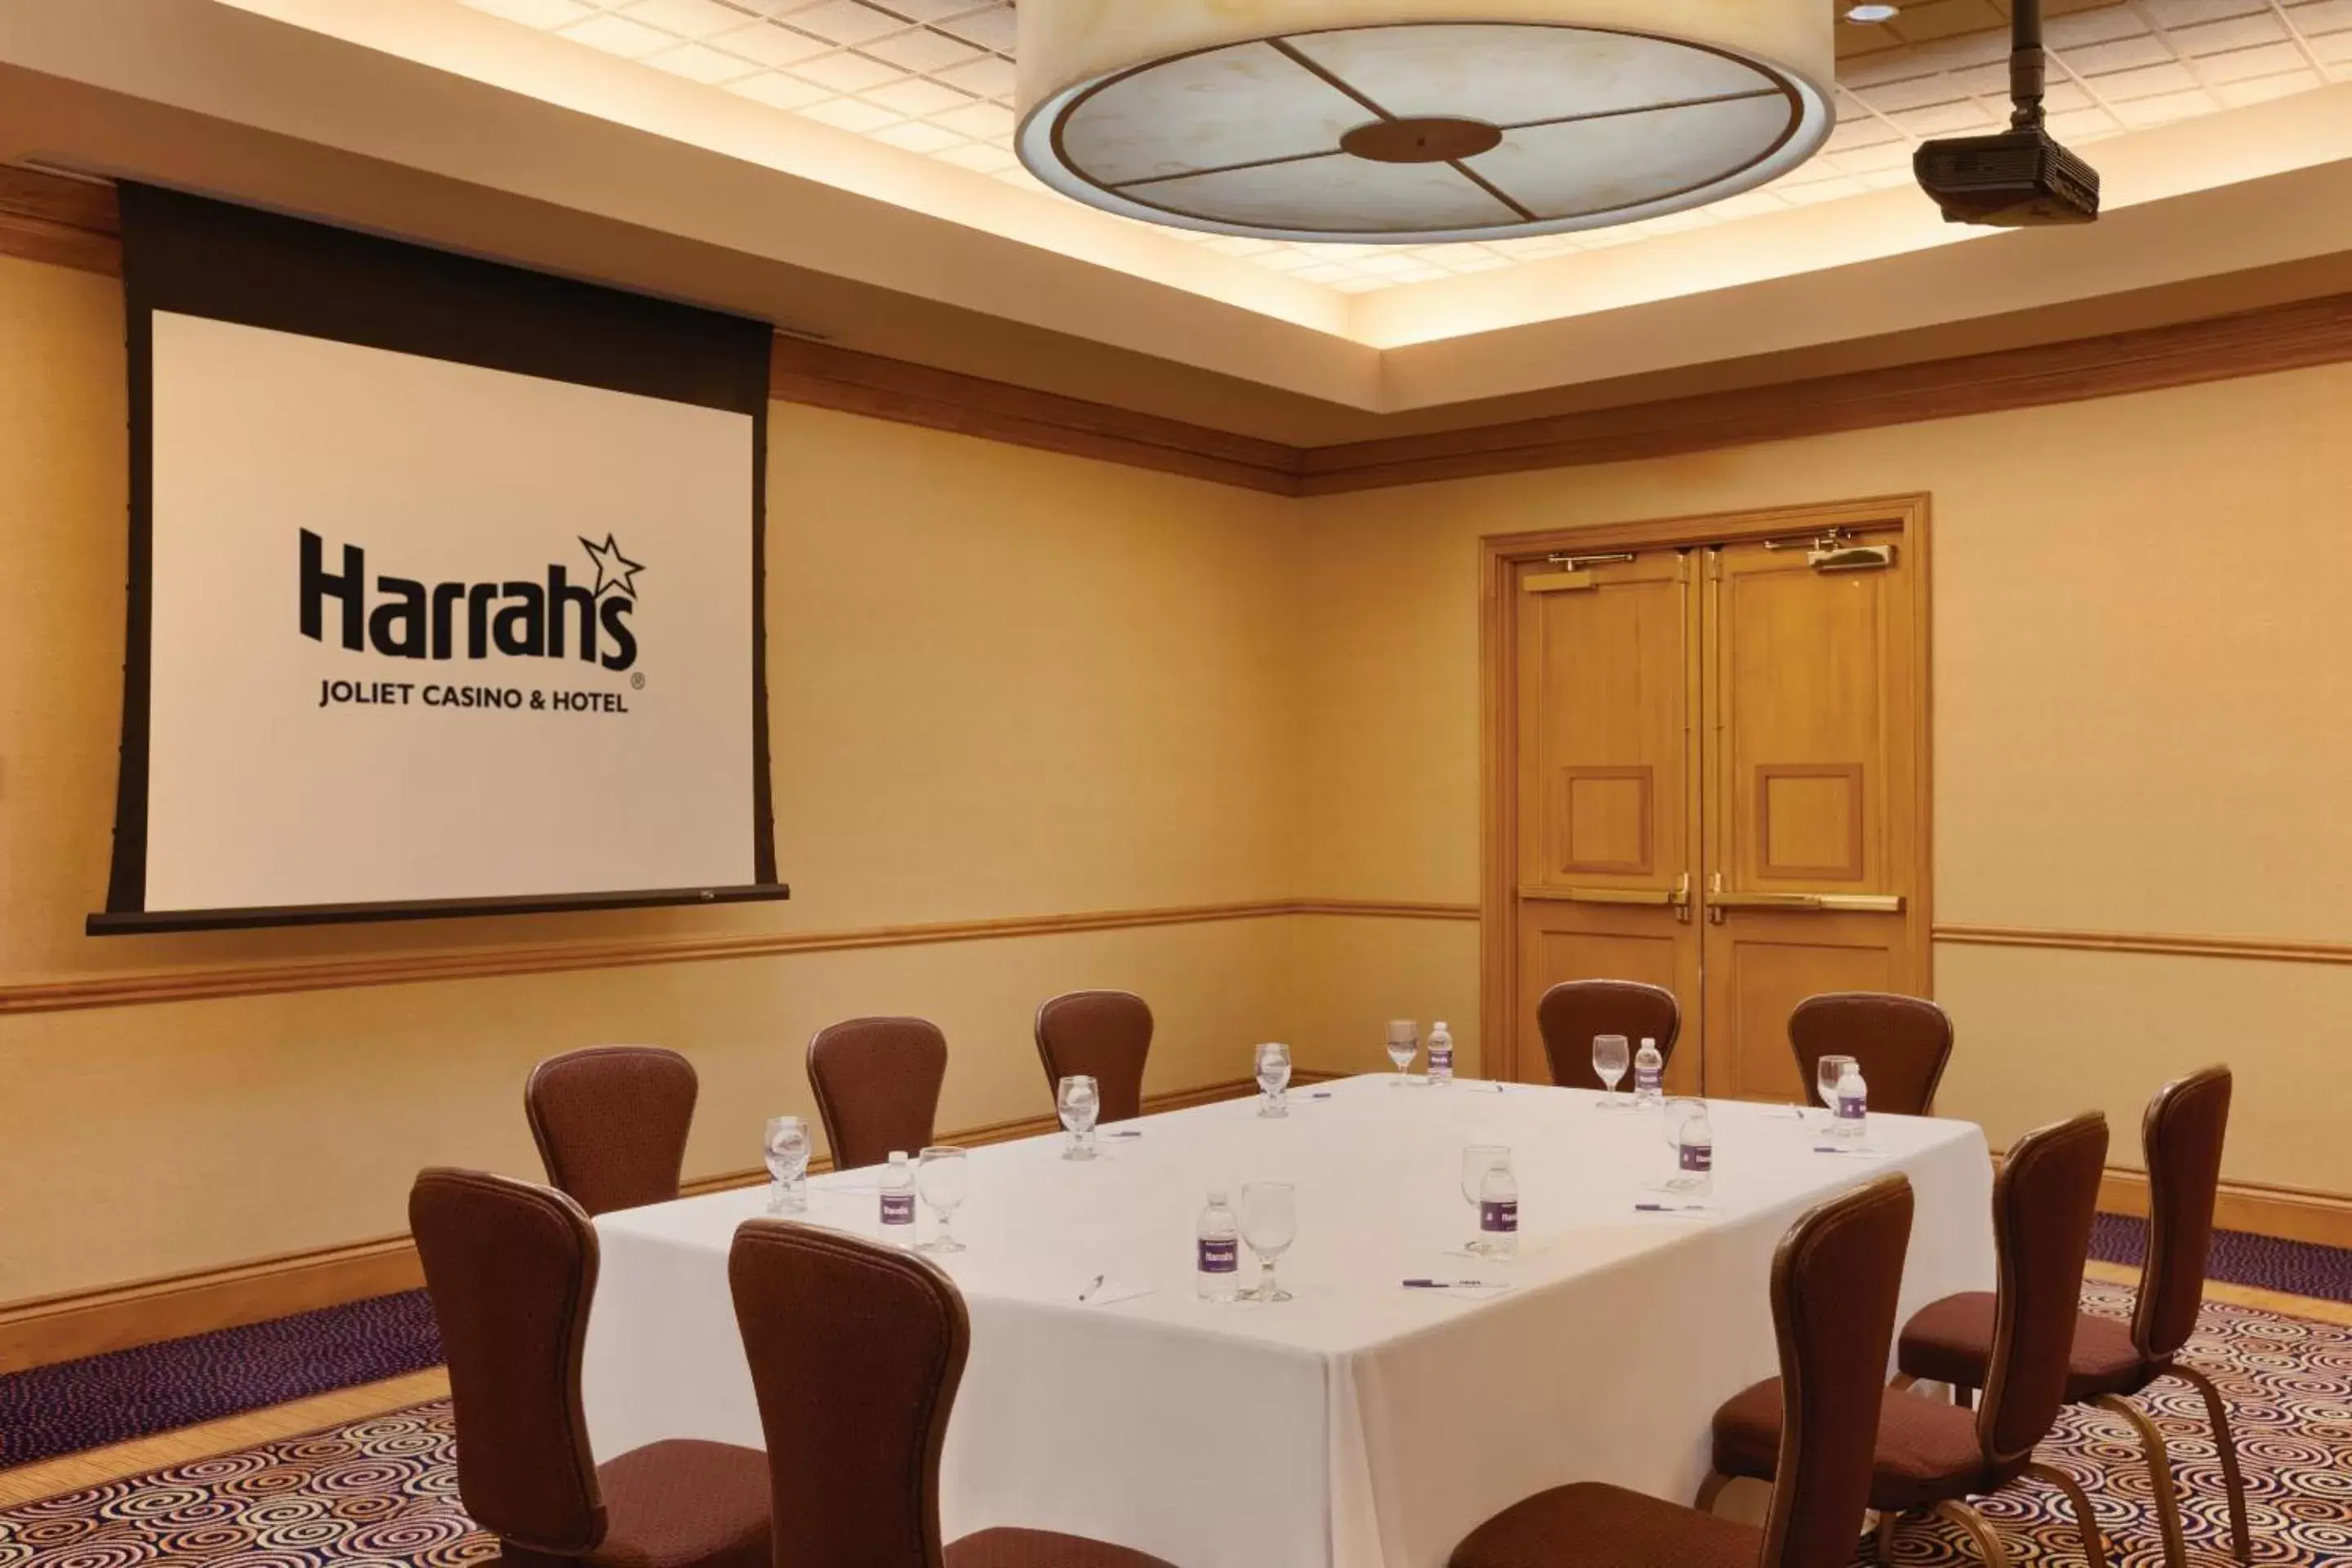 Meeting/conference room in Harrah's Joliet Casino Hotel